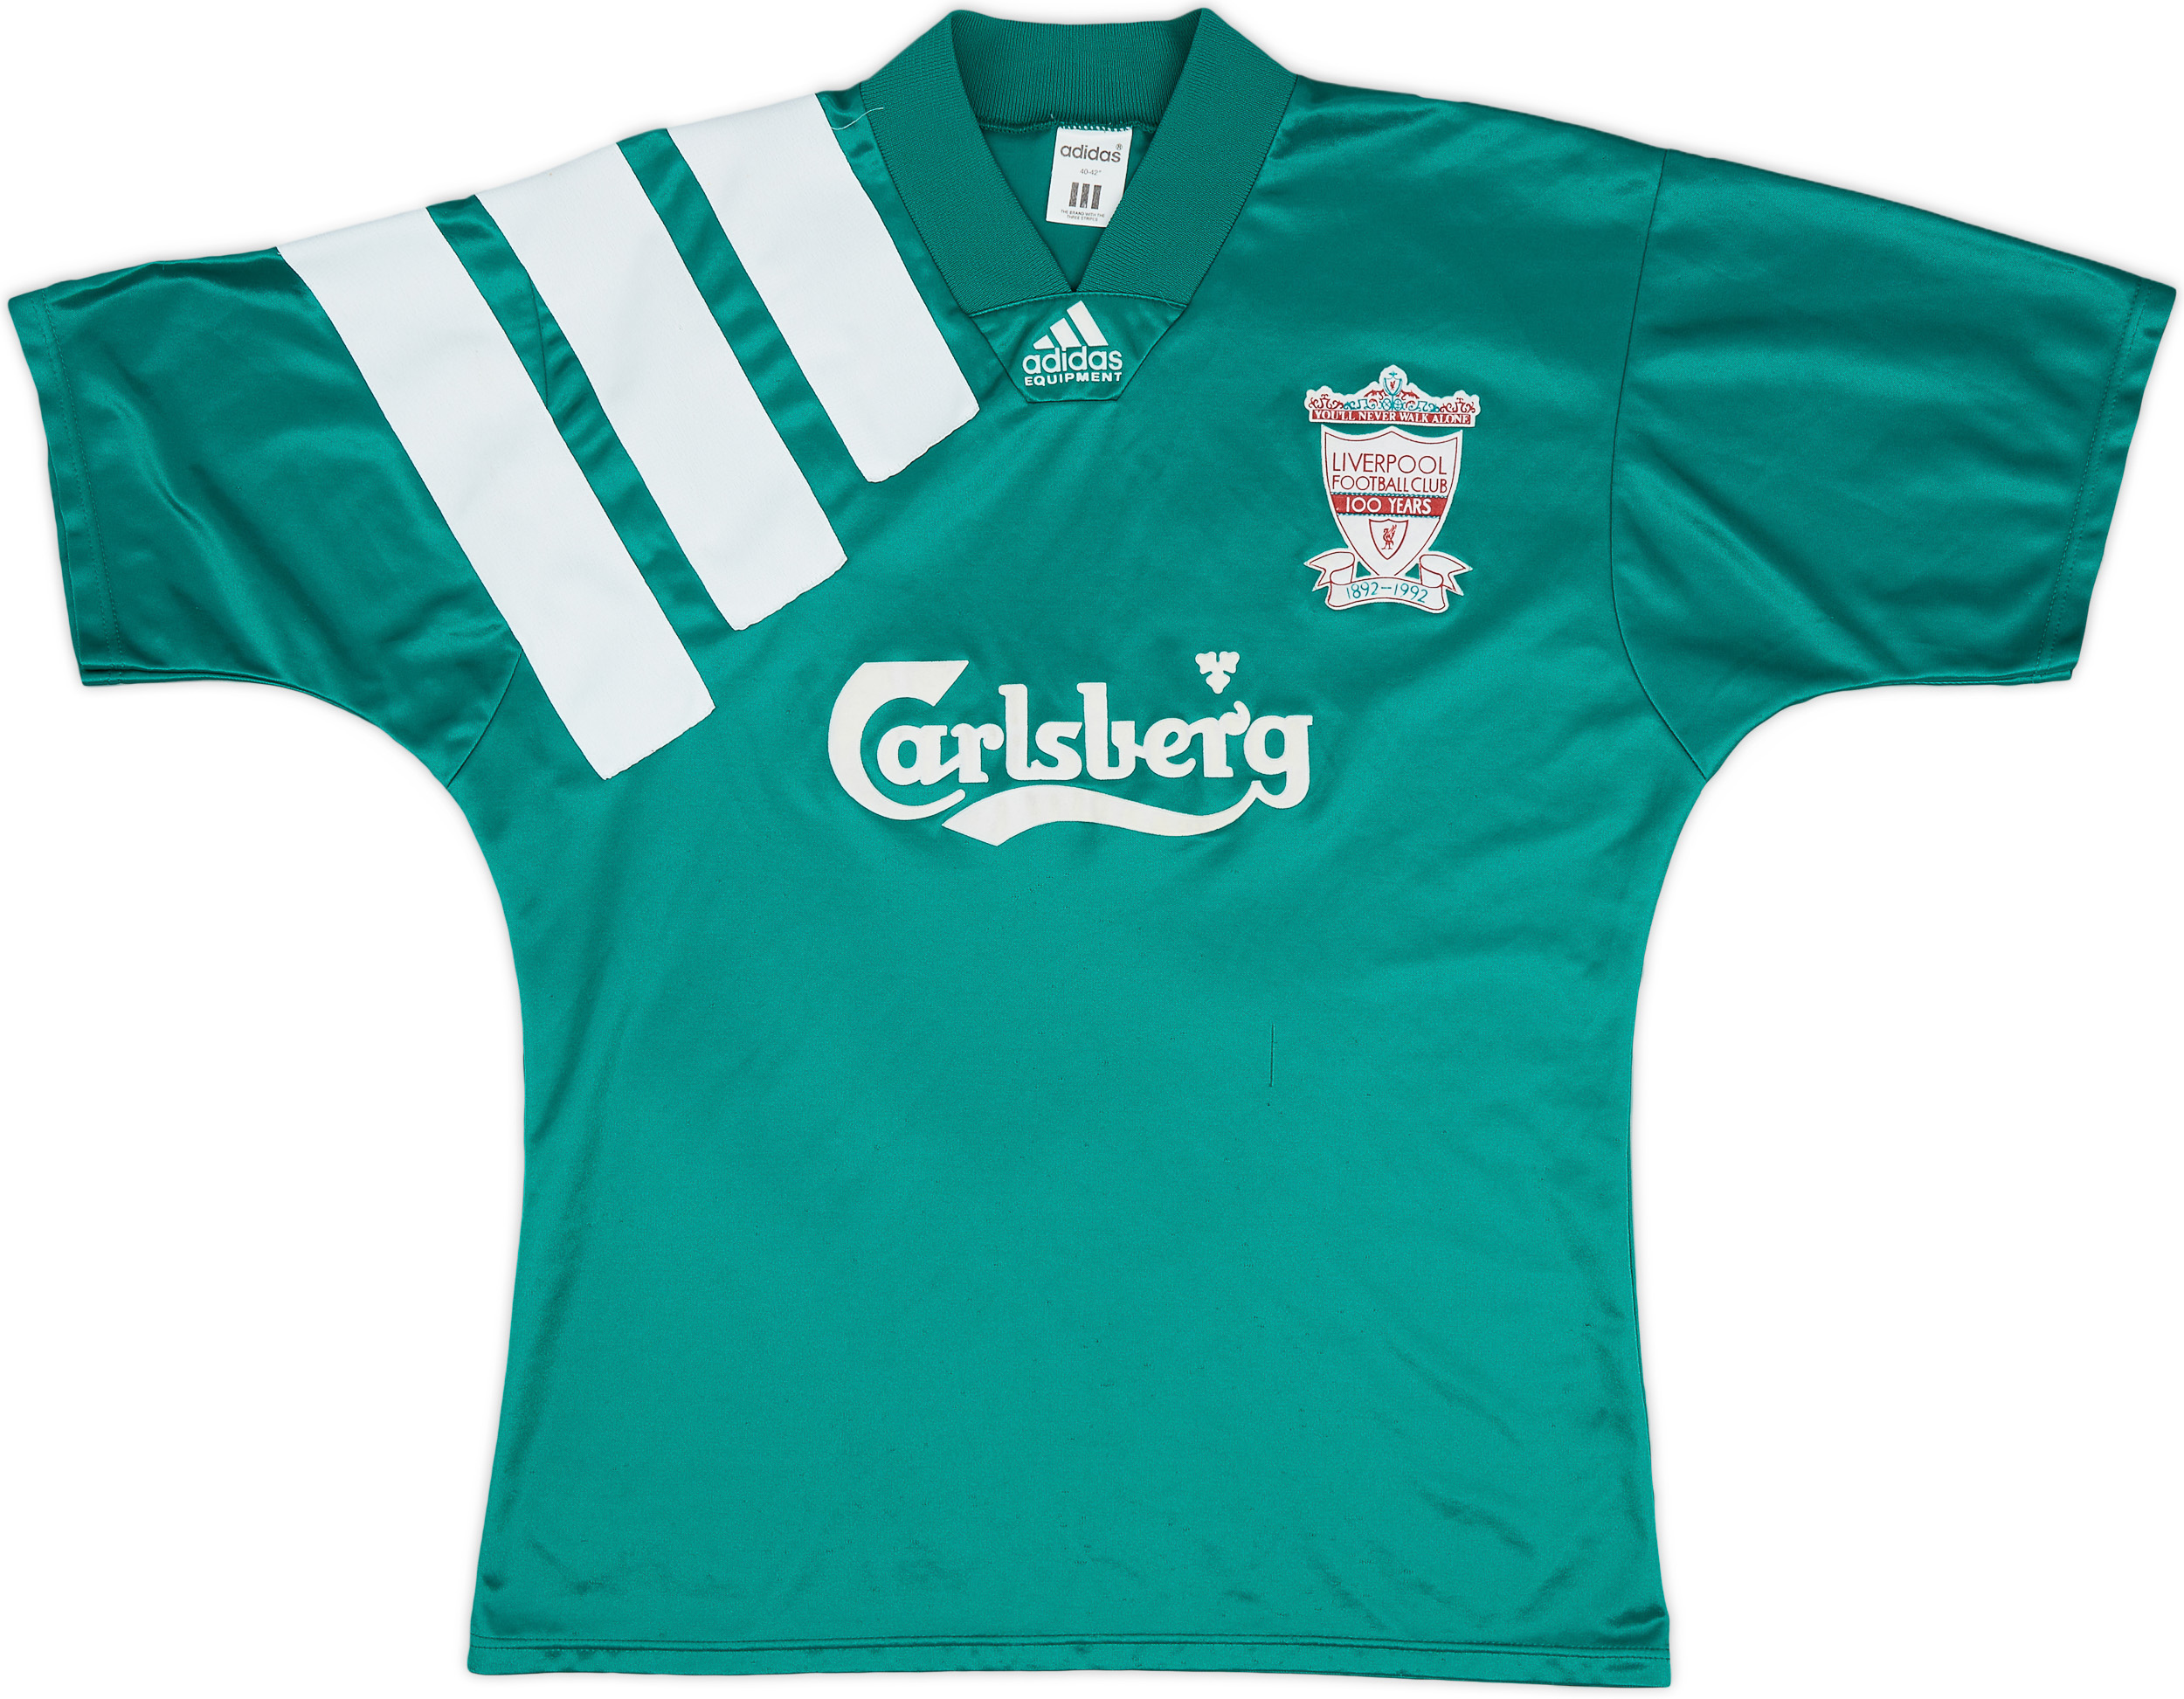 1992-93 Liverpool Centenary Away Shirt - 7/10 - (/)